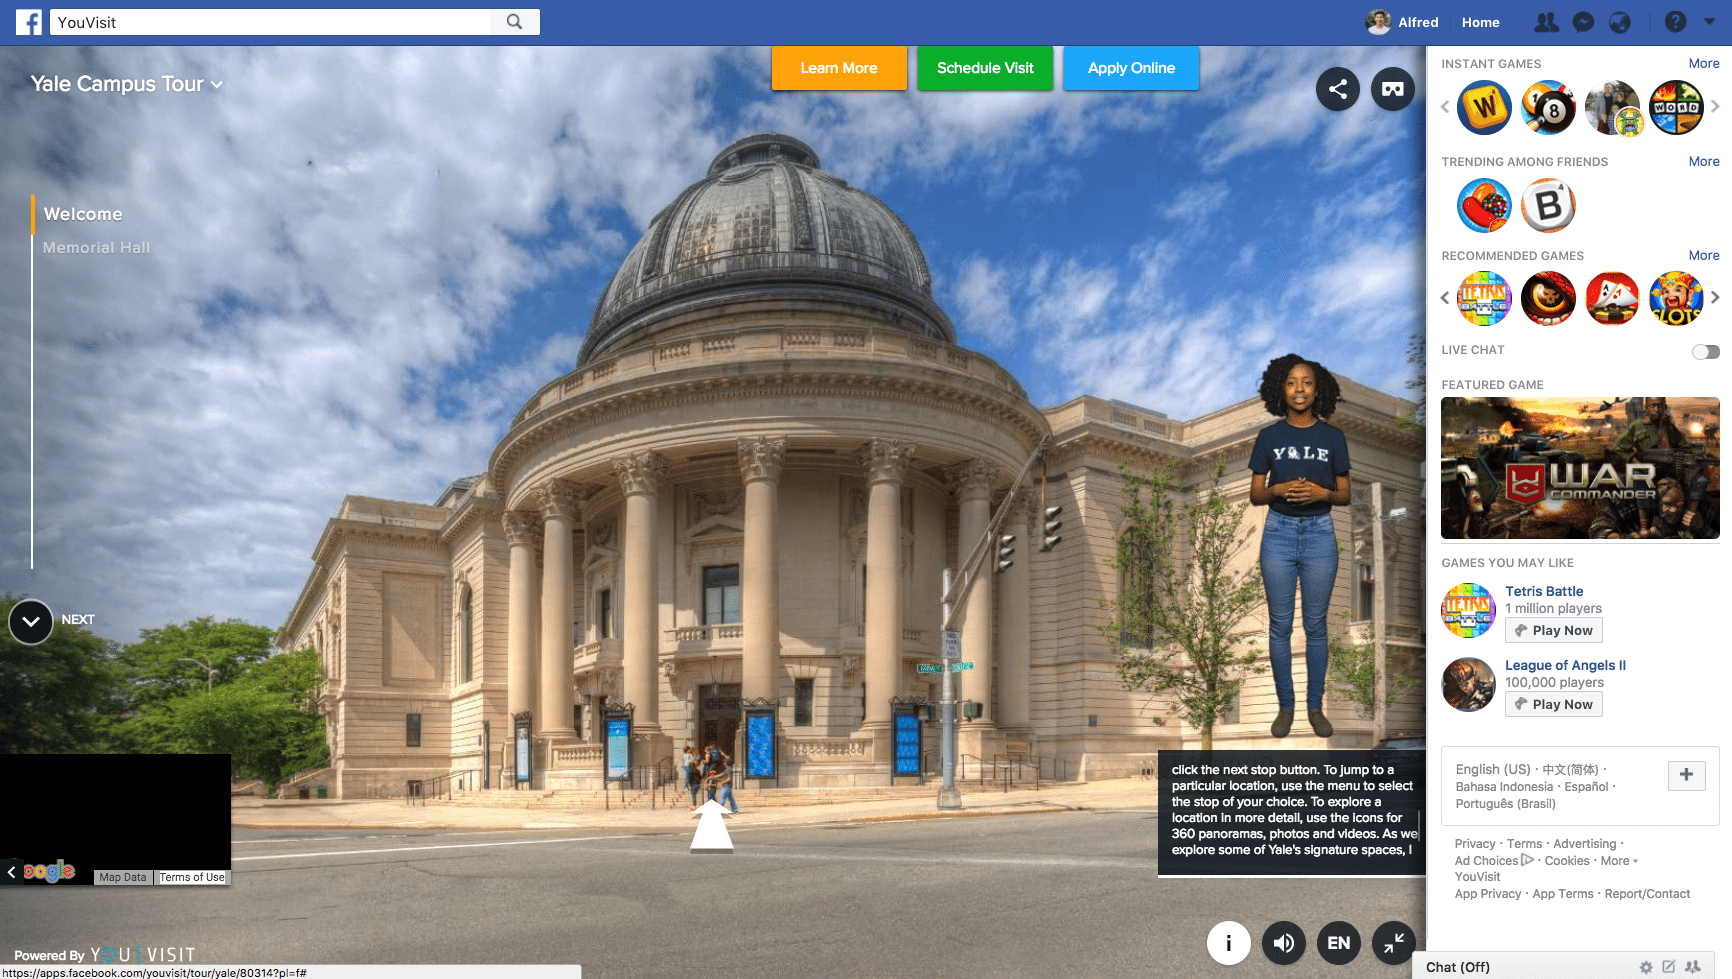 Yale University VR campus tour